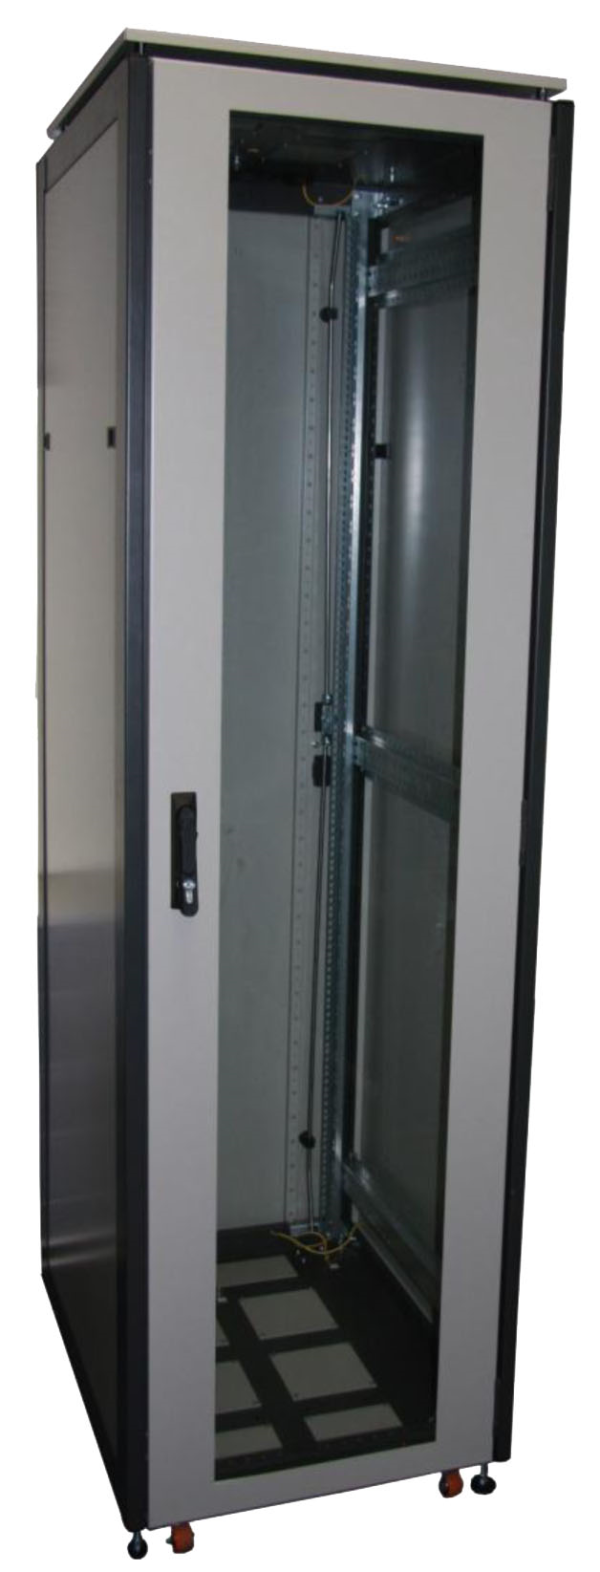 ССКТБ ТОМАСС ШТК-6818Э-00 - шкаф телекоммуникационный 19", 37U, 600х800х1800 мм, с металлической и стеклянной дверью